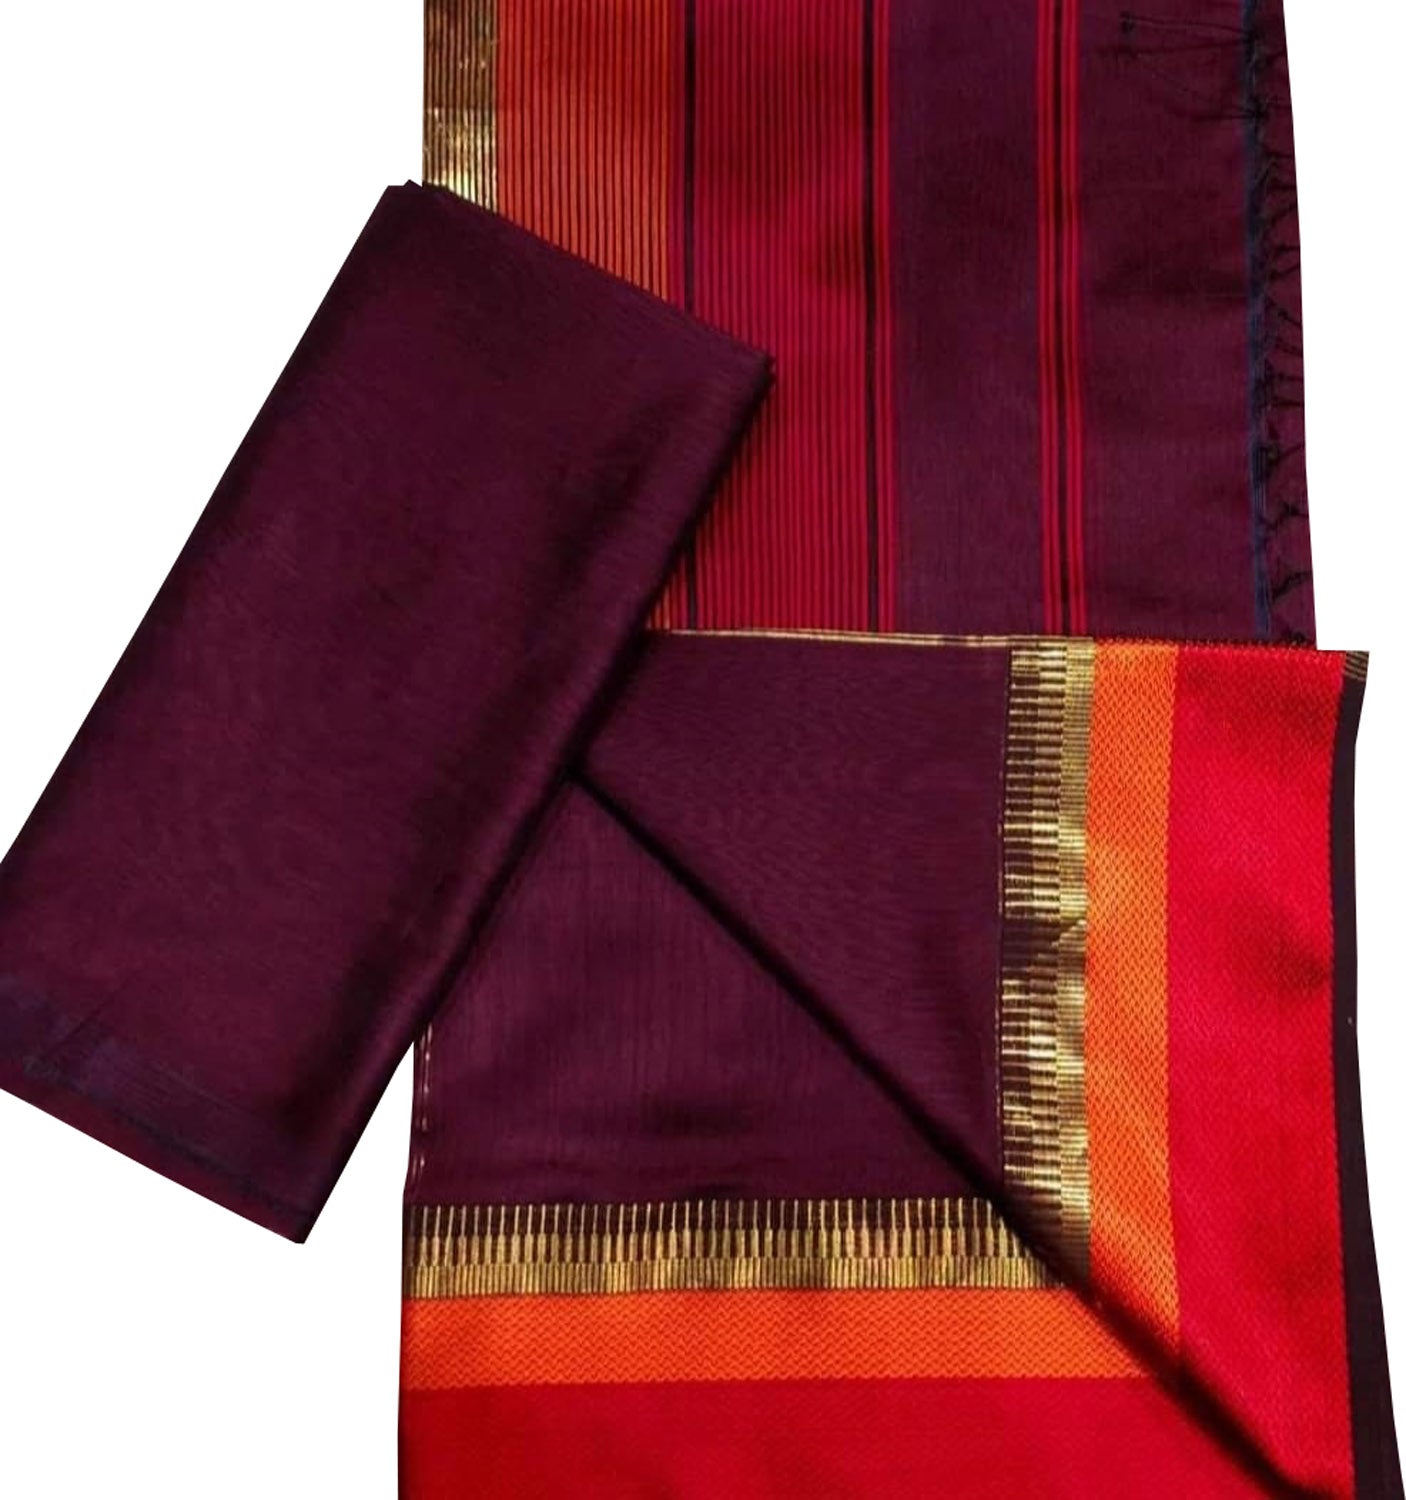 Naptol Print Maheshwari Silk Salwar Material